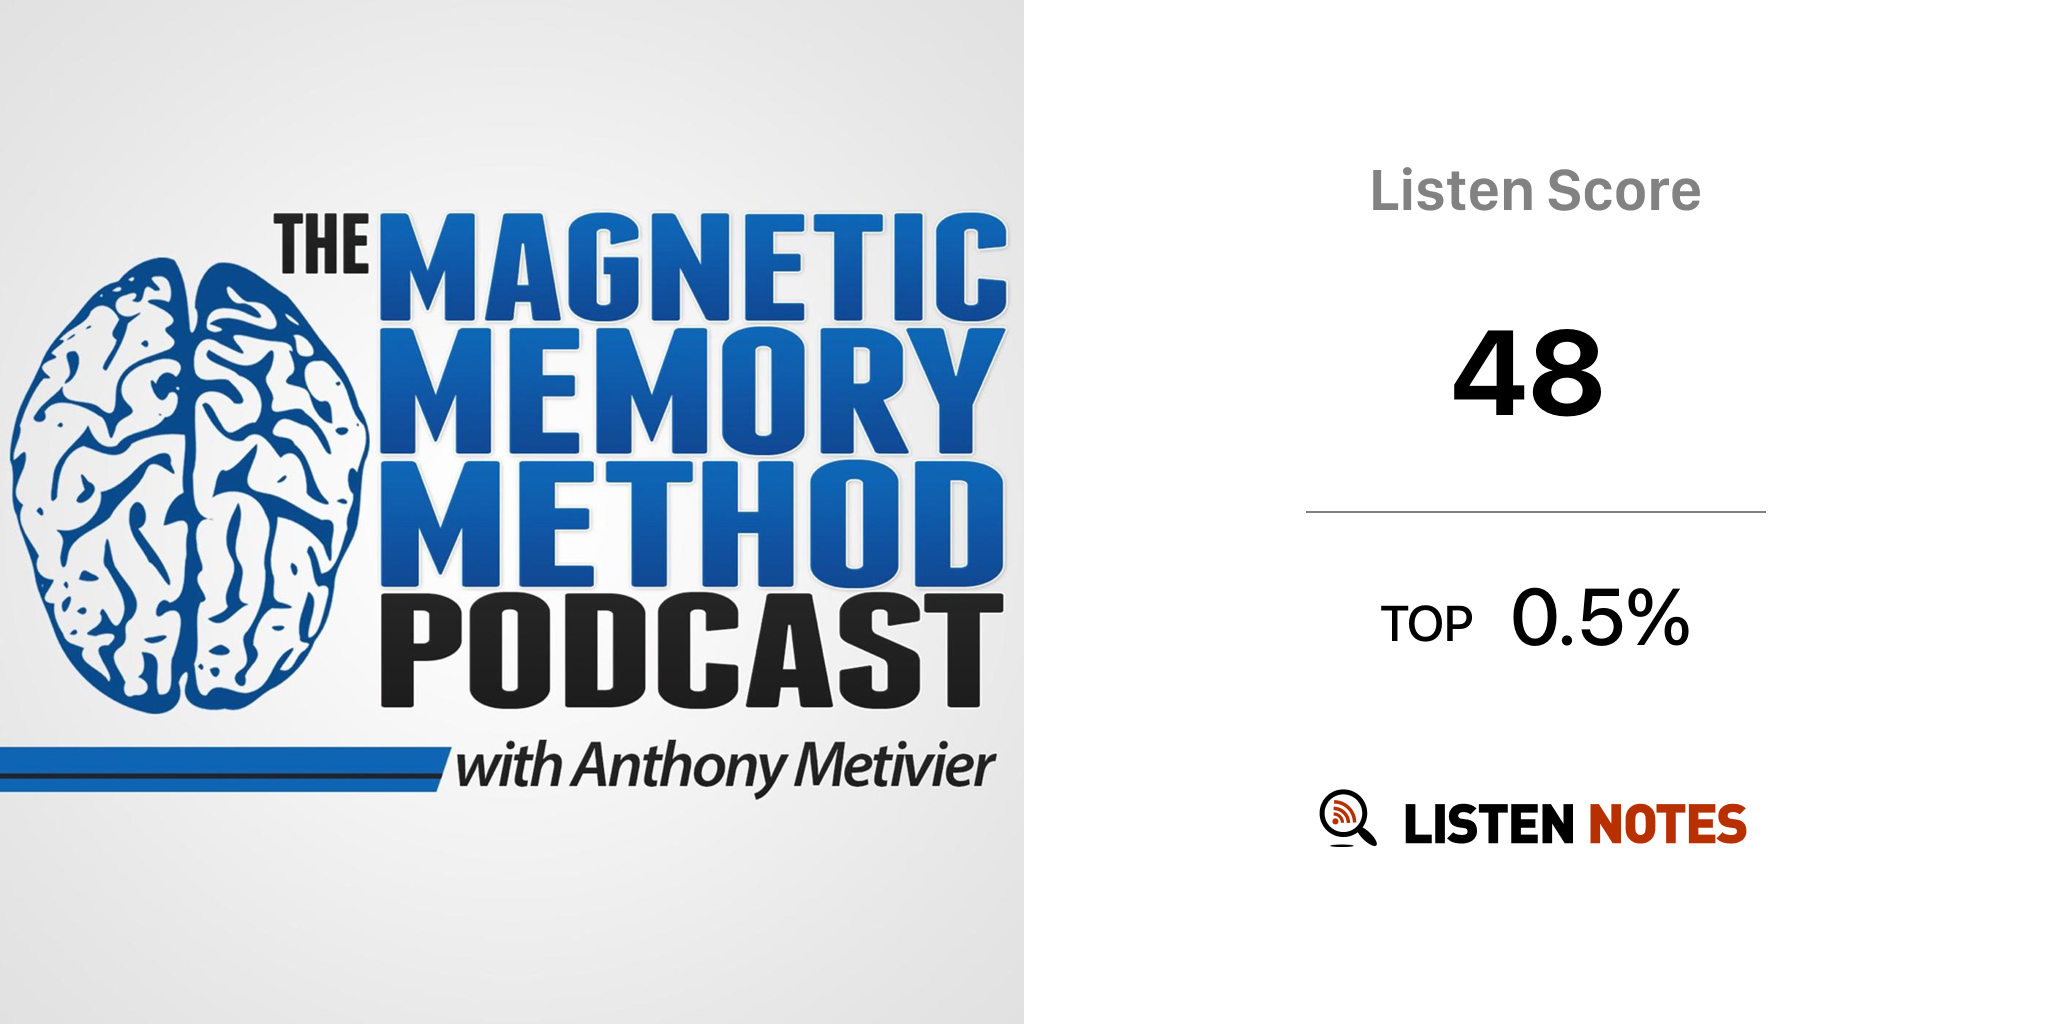 Notesbog lungebetændelse Middelhavet Anthony Metivier's Magnetic Memory Method Podcast - Anthony Metivier's Magnetic  Memory Method Podcast | Listen Notes